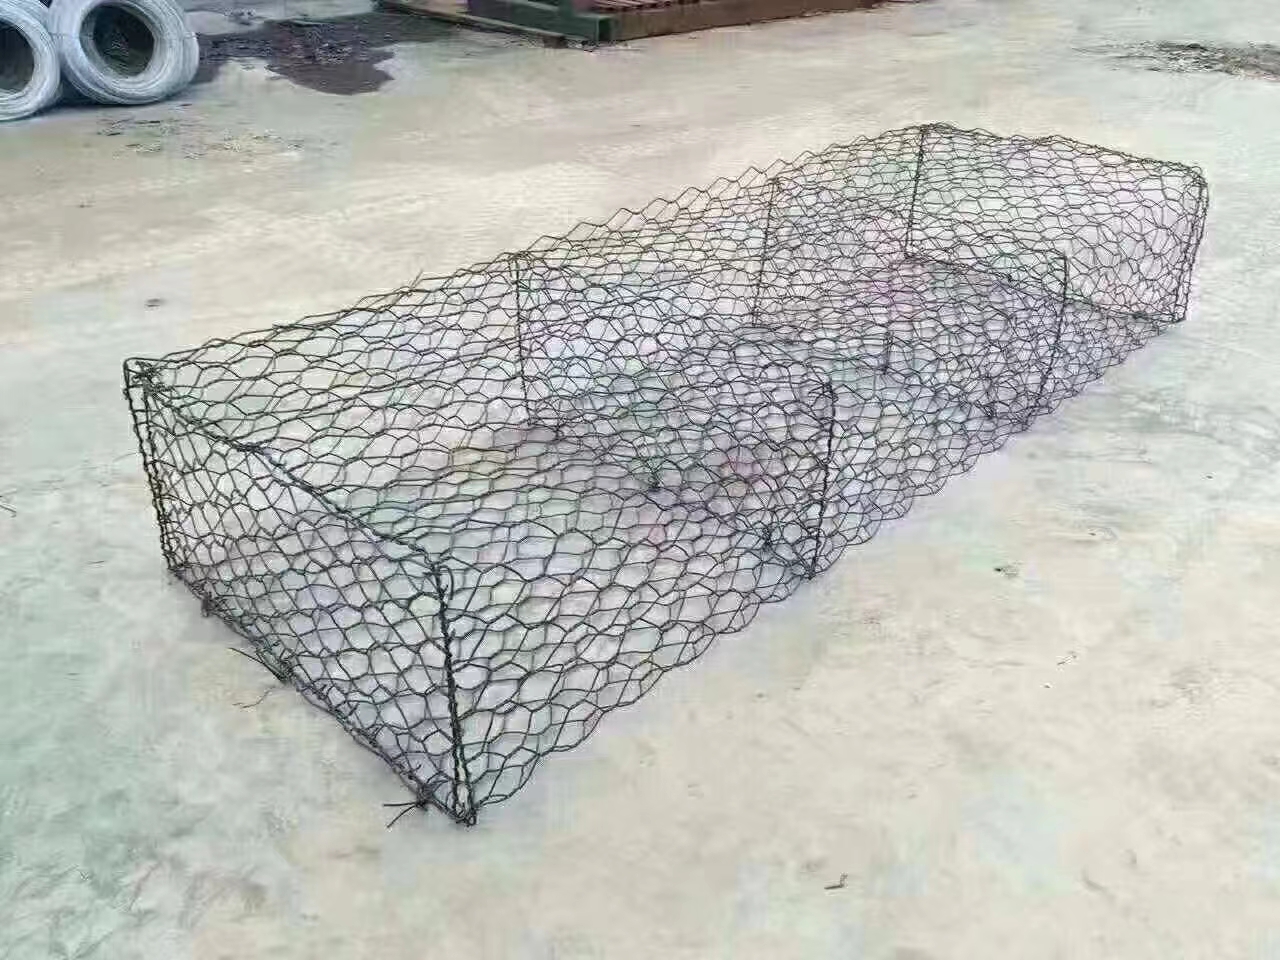 石笼网防爆墙 / Electric welding net explosion-proof wall石笼网箱详情2